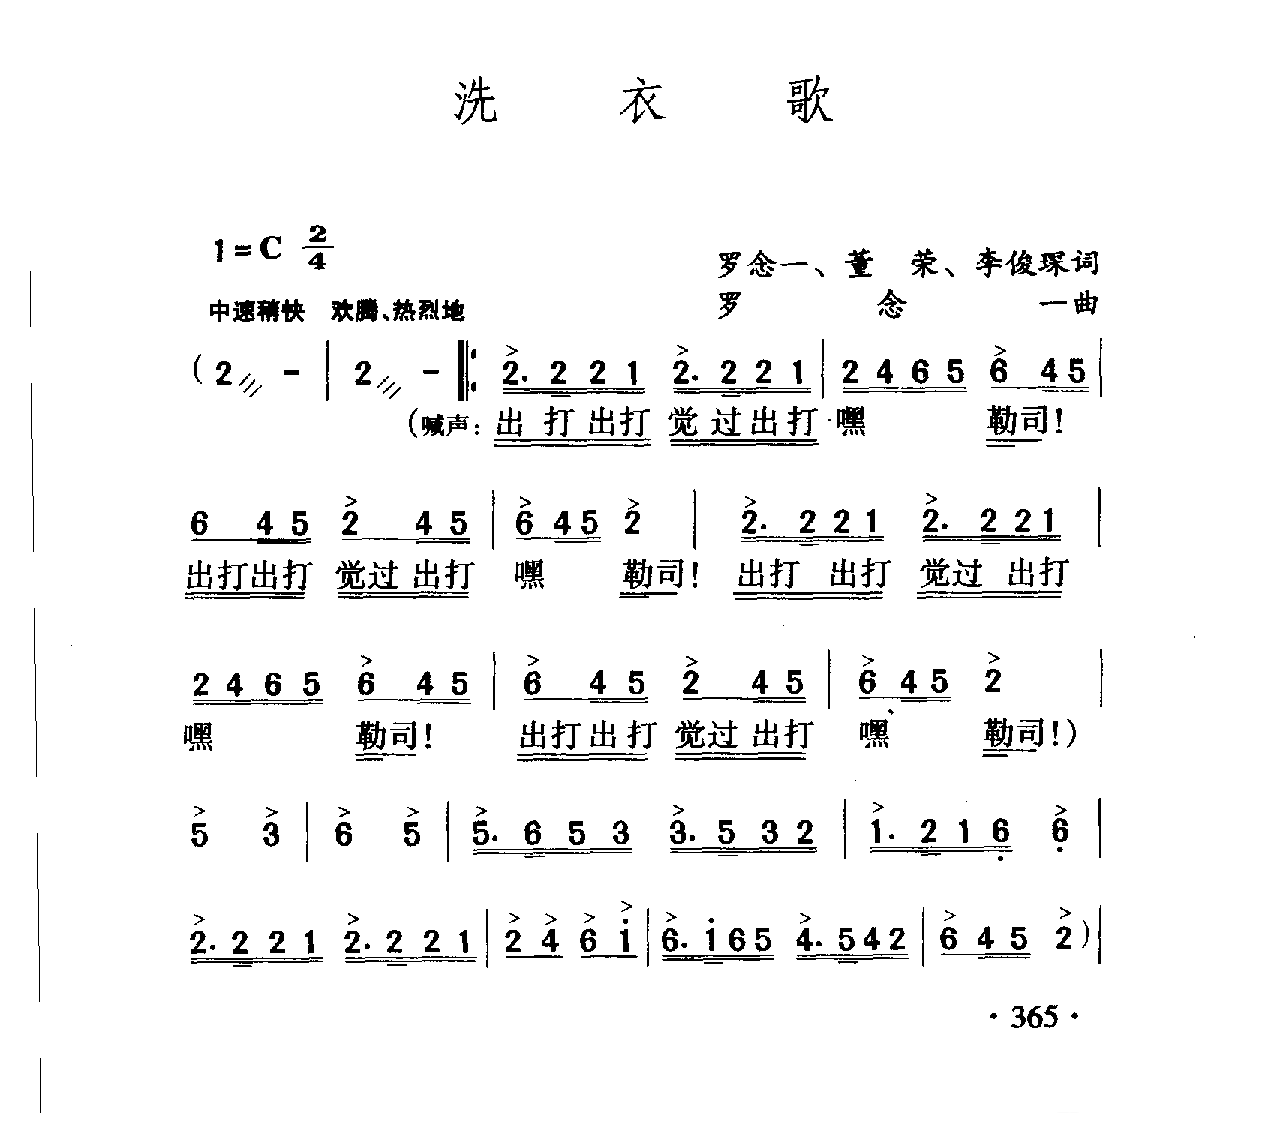 中国名歌[洗衣歌]乐谱